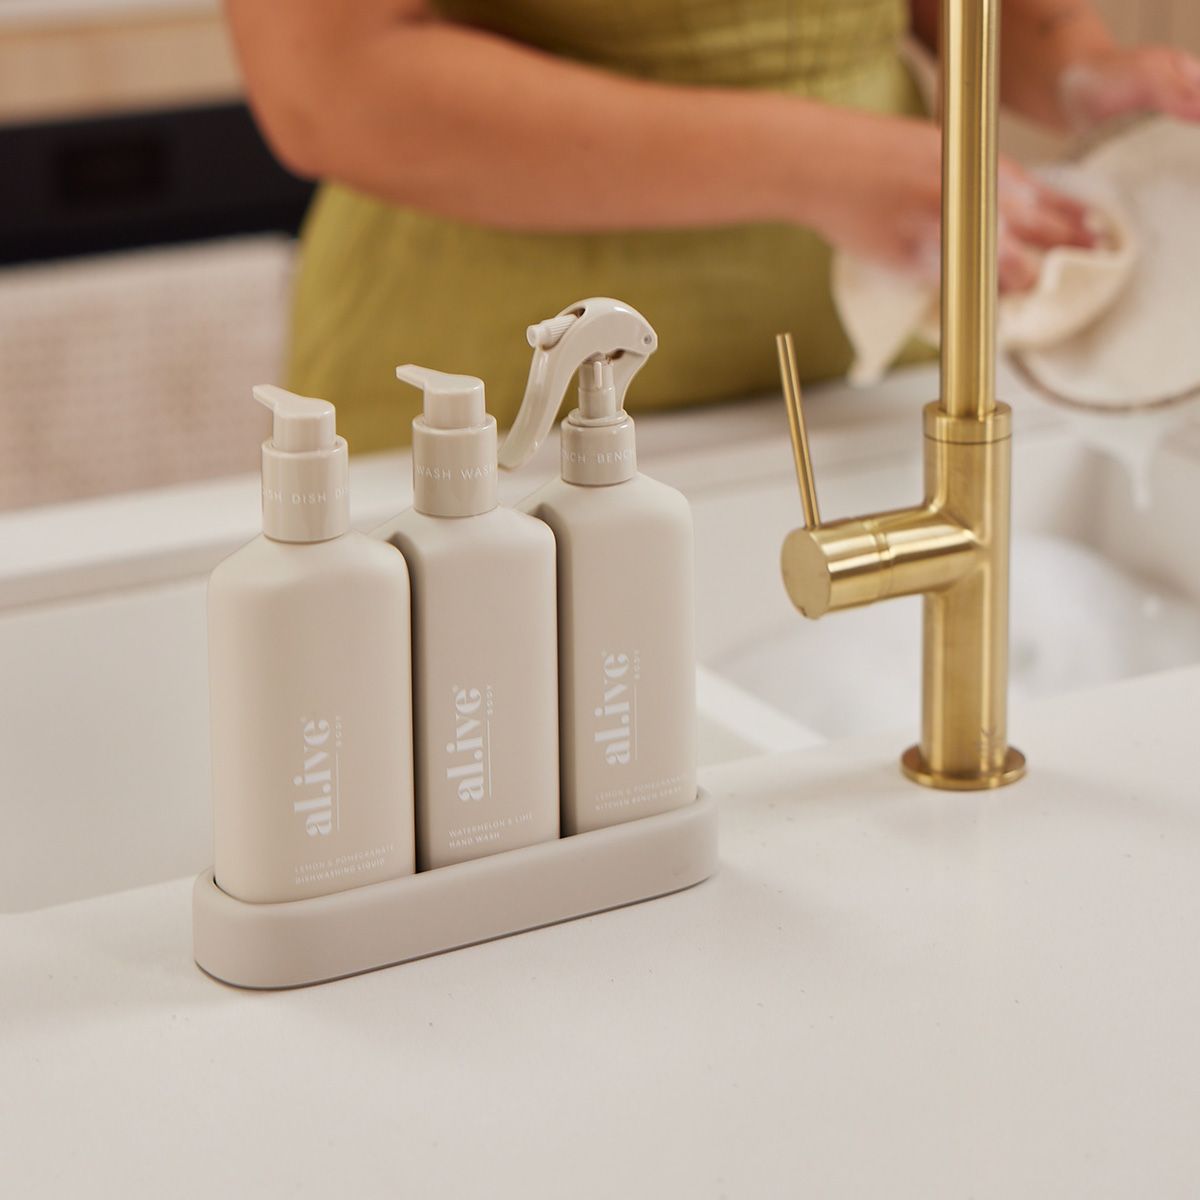 Dishwashing Liquid, Hand Wash & Bench Spray + Tray, Premium Kitchen Trio